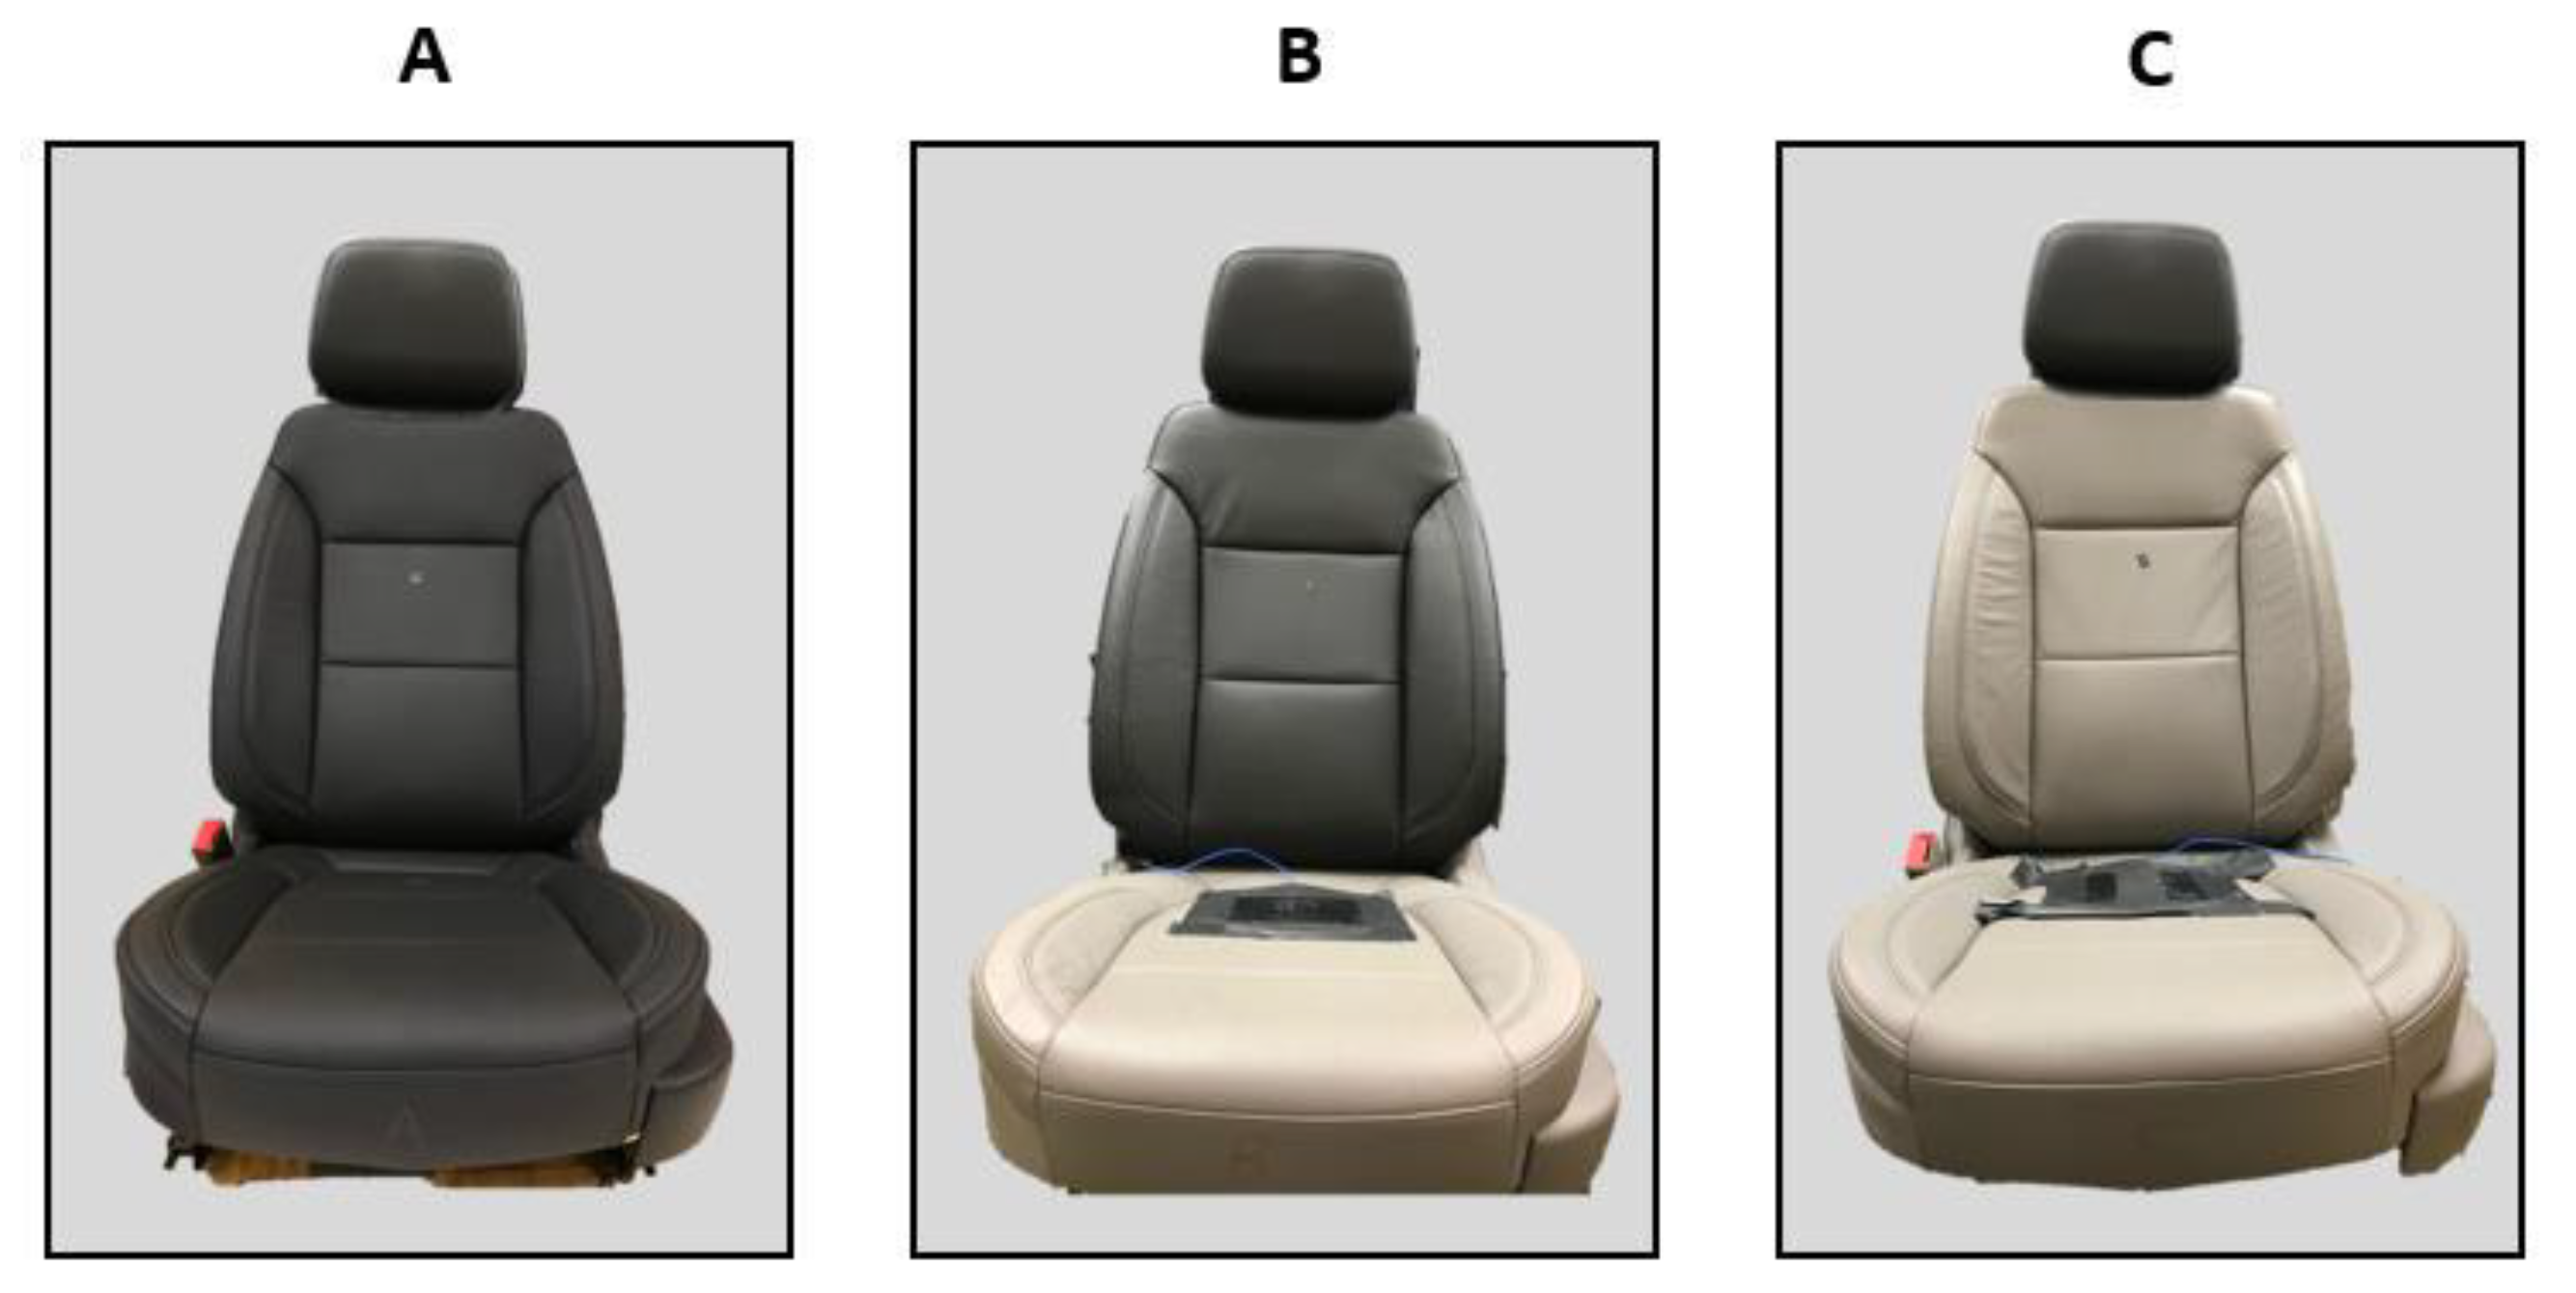 Automotive seat: structure (a), foam cushion (b), automotive complex (c)